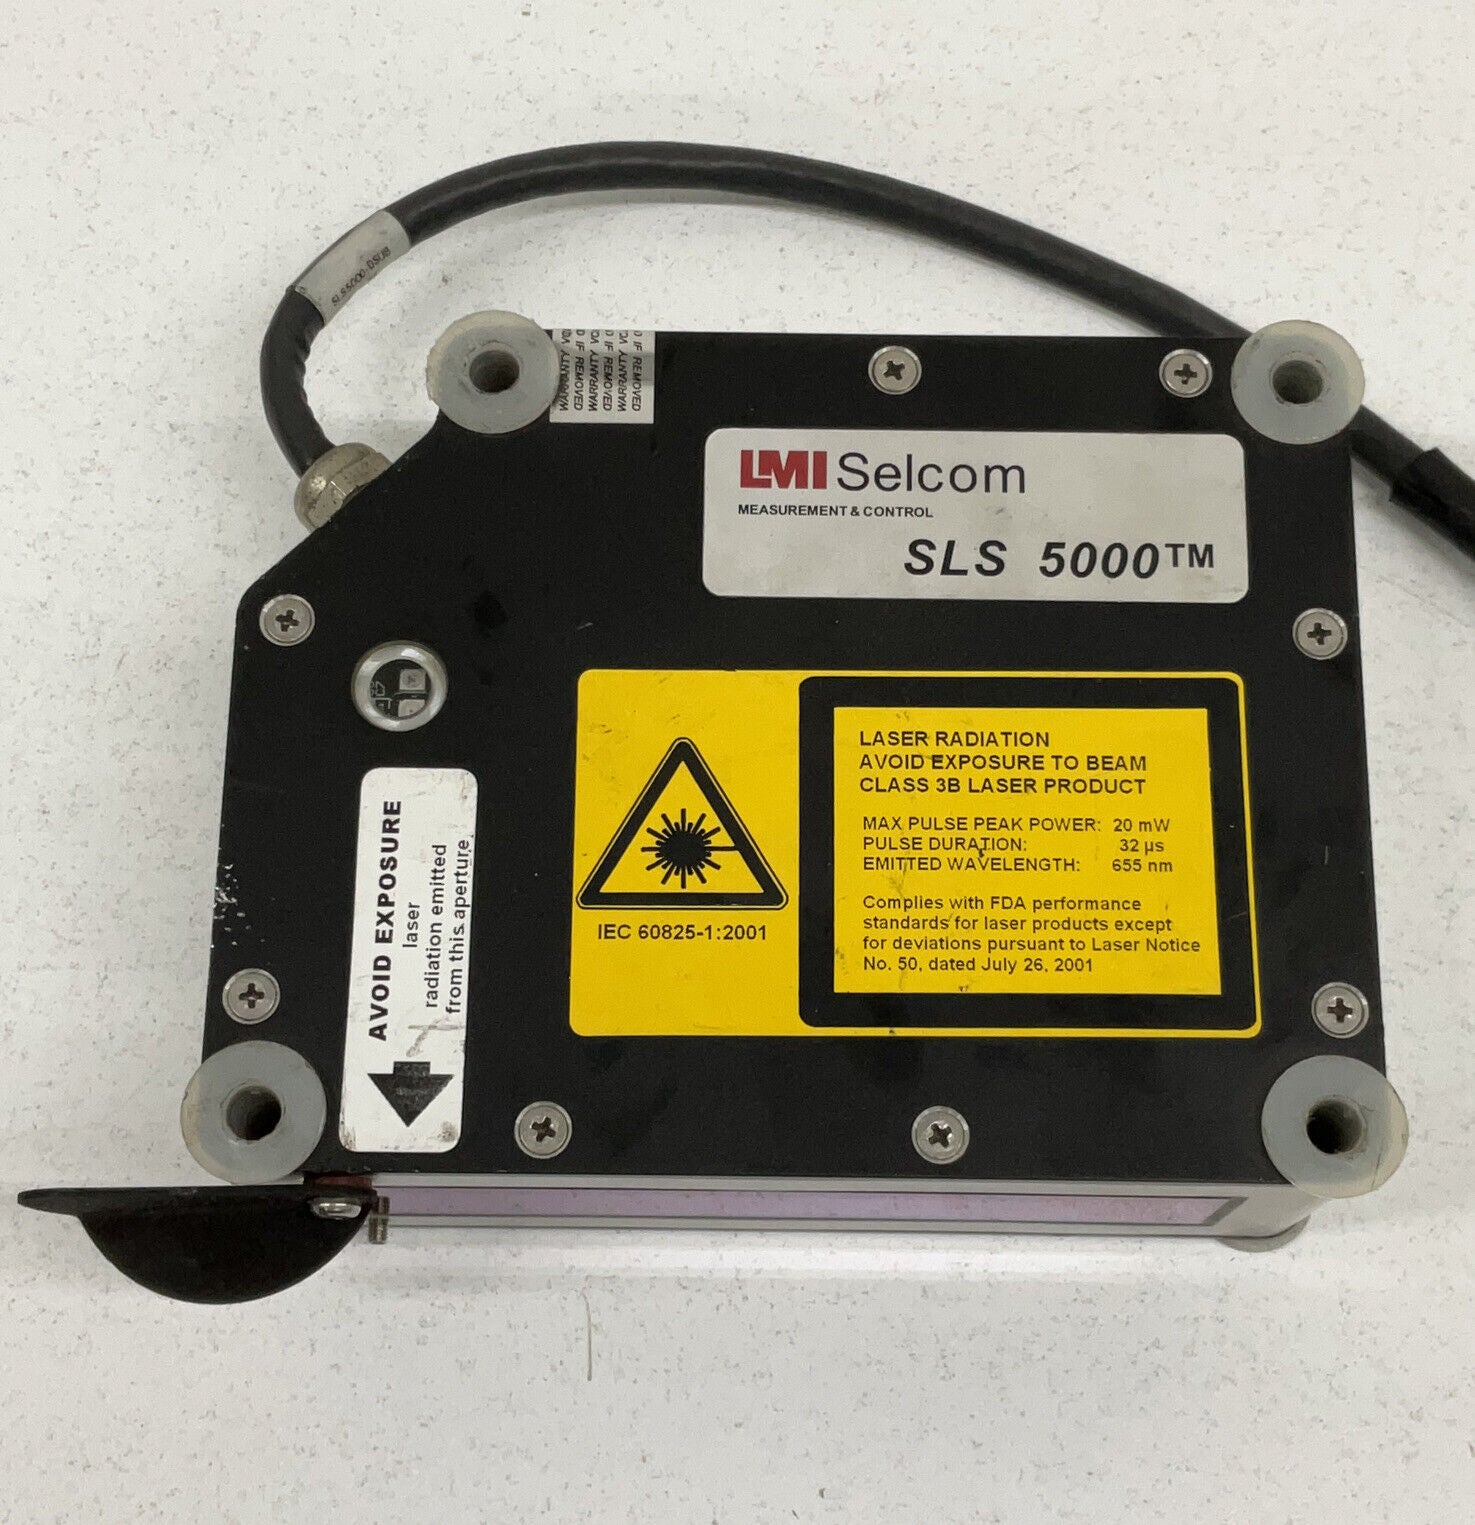 LMI Selcom SLS 5000 Laser Gauging System 35/200-RU (RE246)